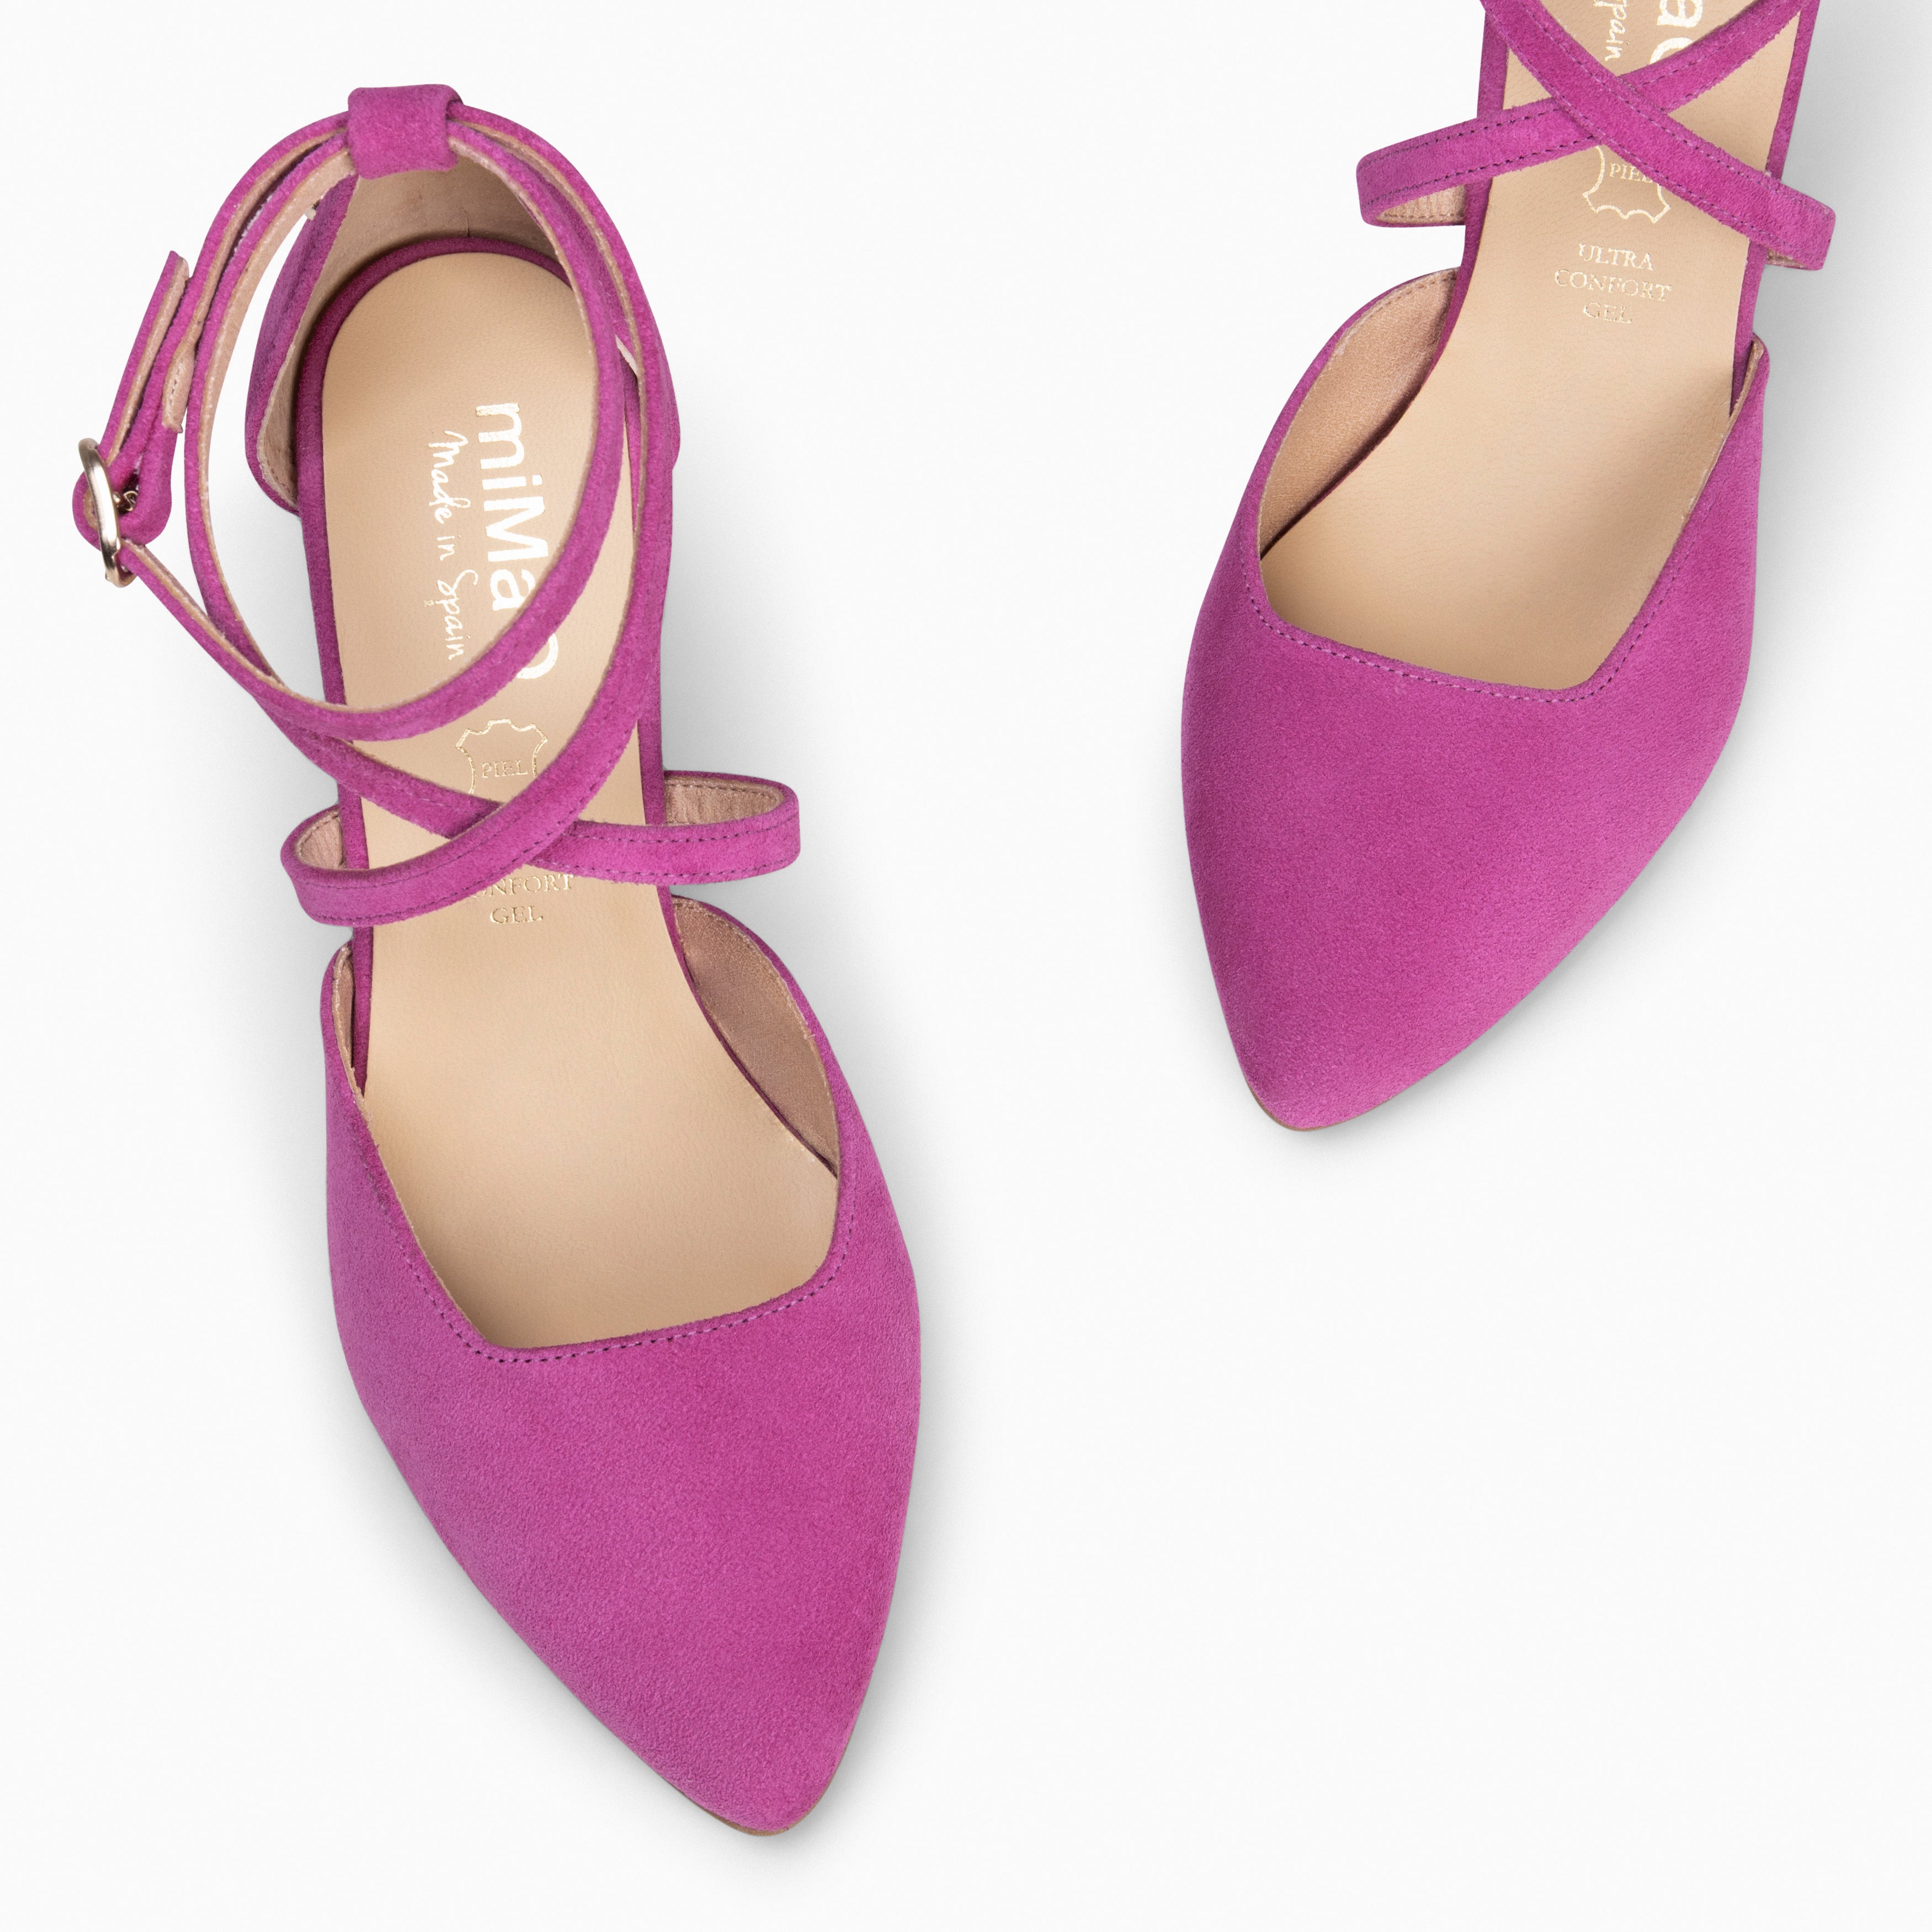 ARIEL – FUCHSIA Wide heel shoe